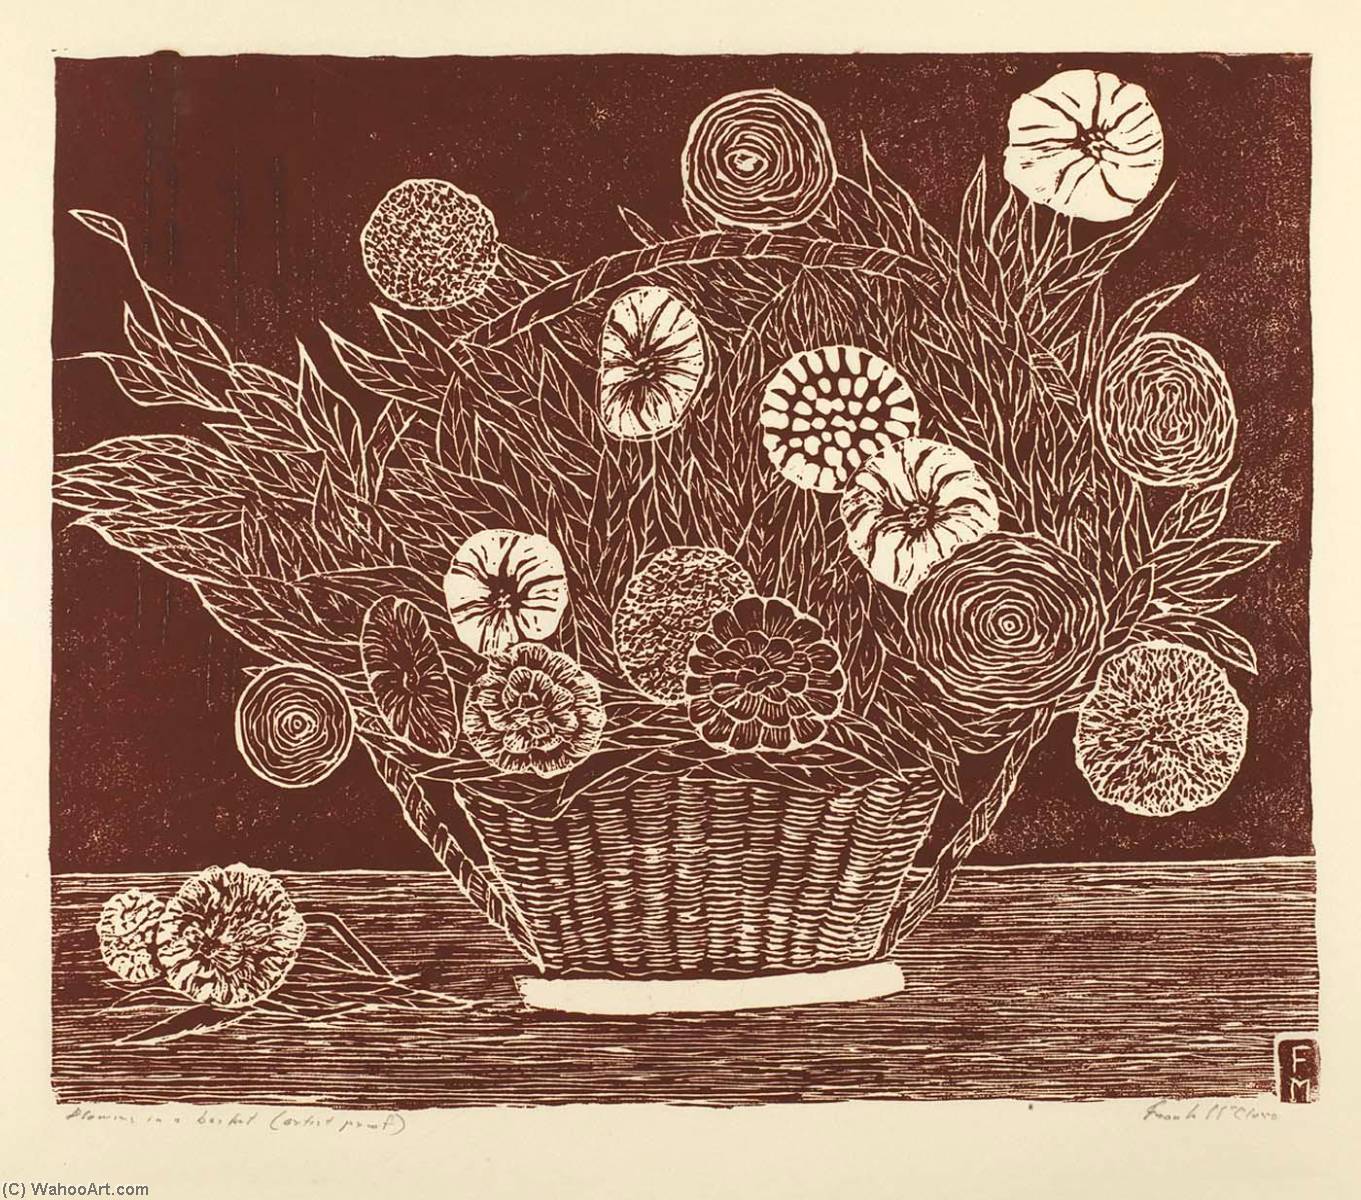 WikiOO.org - Encyclopedia of Fine Arts - Lukisan, Artwork Frank Mcclure - Flowers in a Basket